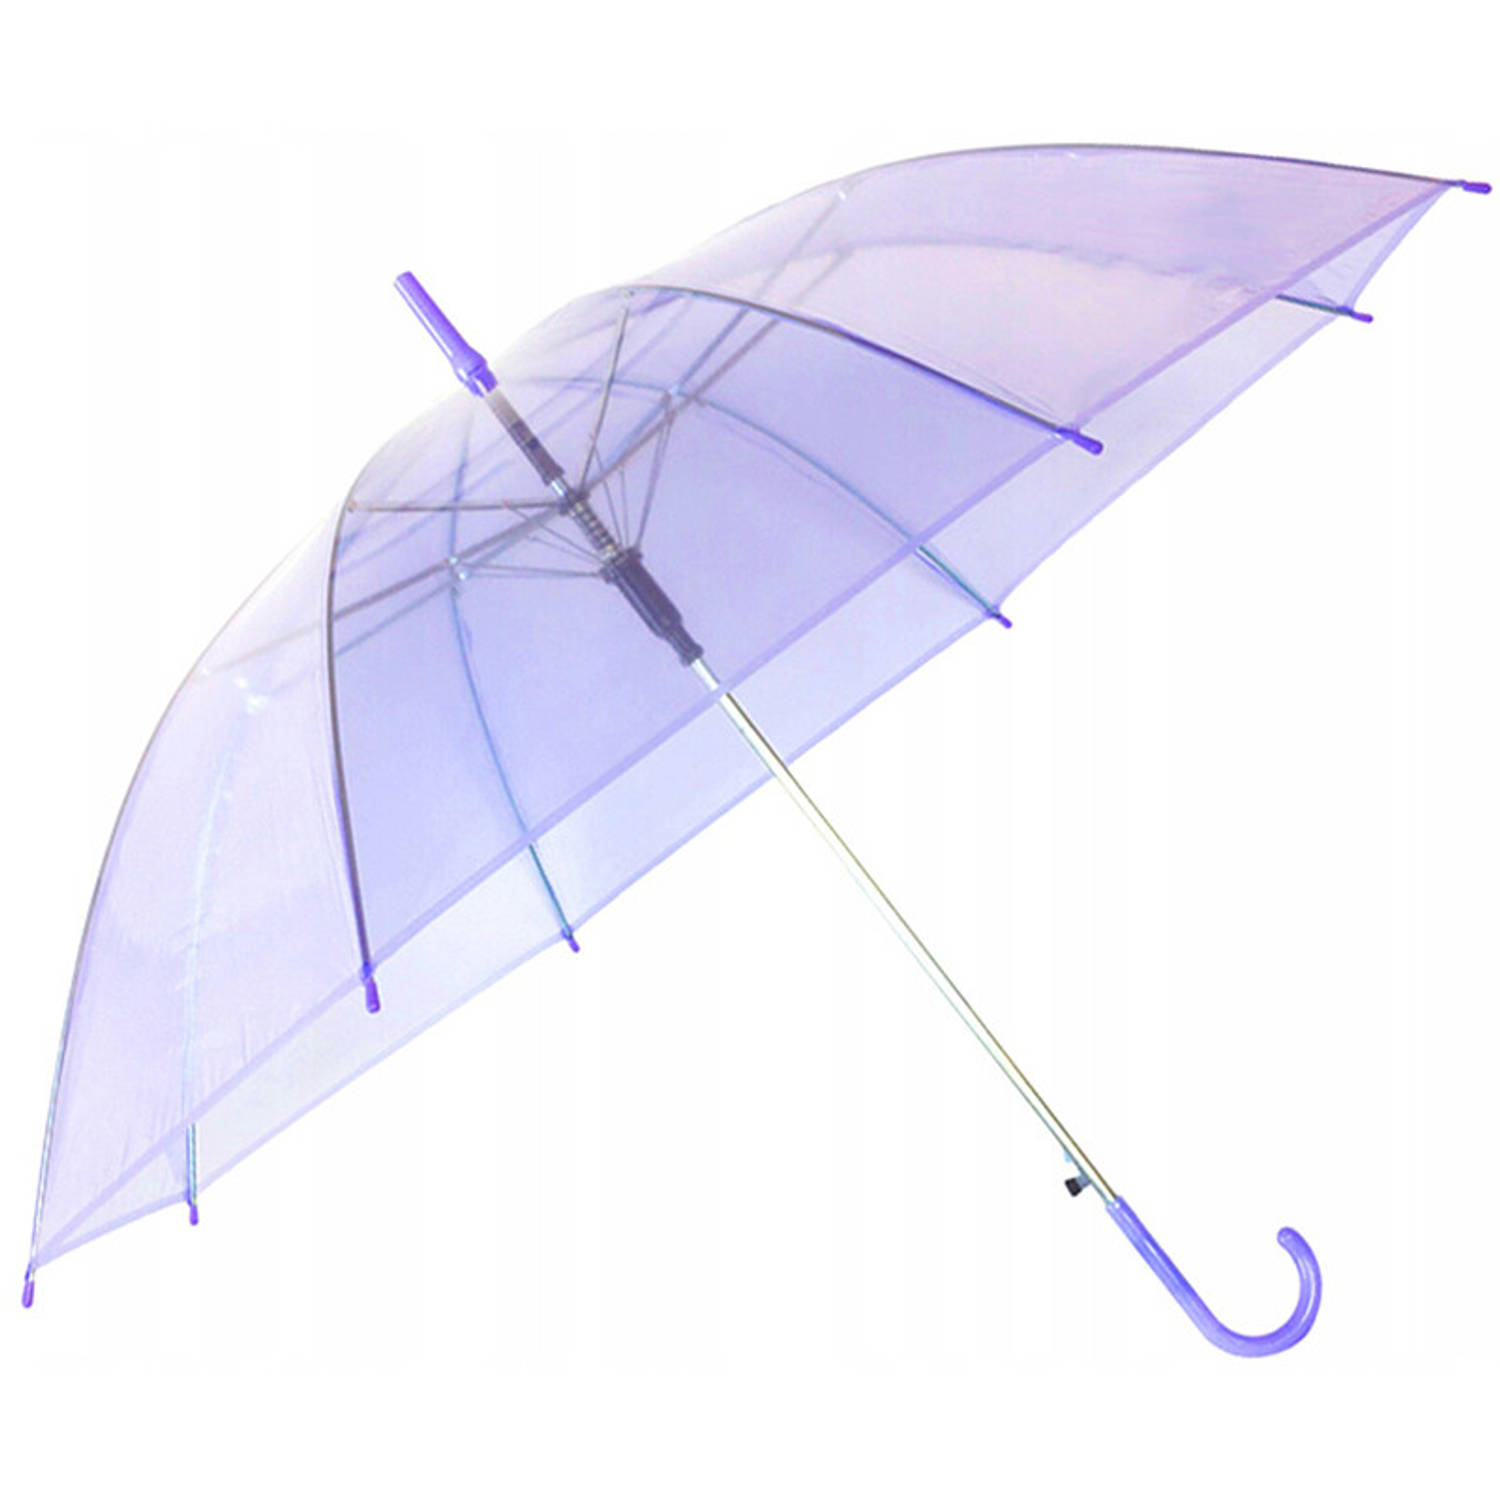 Paraplu - Aptoza Plu - Opvouwbaar - Transparant Paars - Doorzichtige Paraplu - Ø107cm